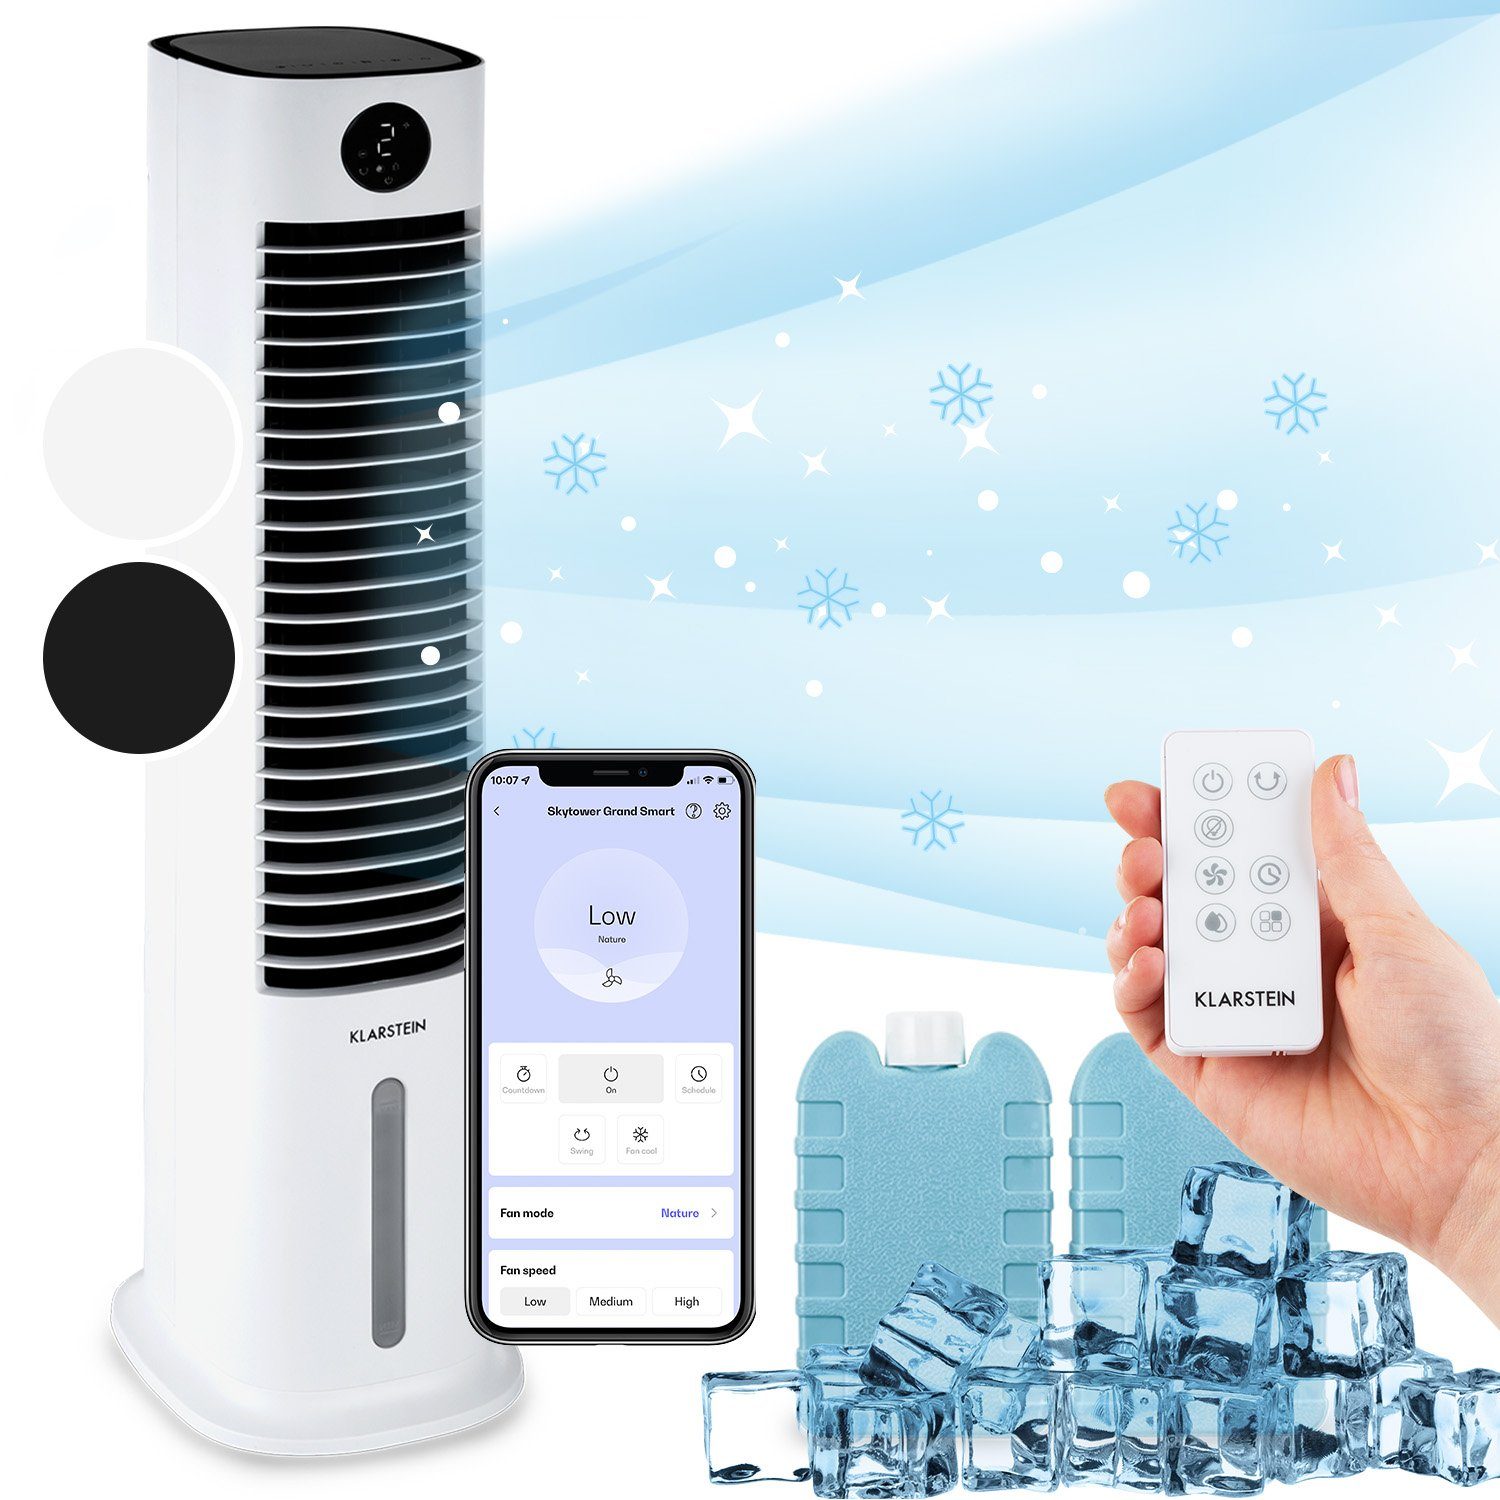 Klarstein Ventilatorkombigerät Skytower Grand Smart Luftkühler, mit Wasserkühlung & Eis mobil Klimagerät ohne Abluftschlauch | Standventilatoren